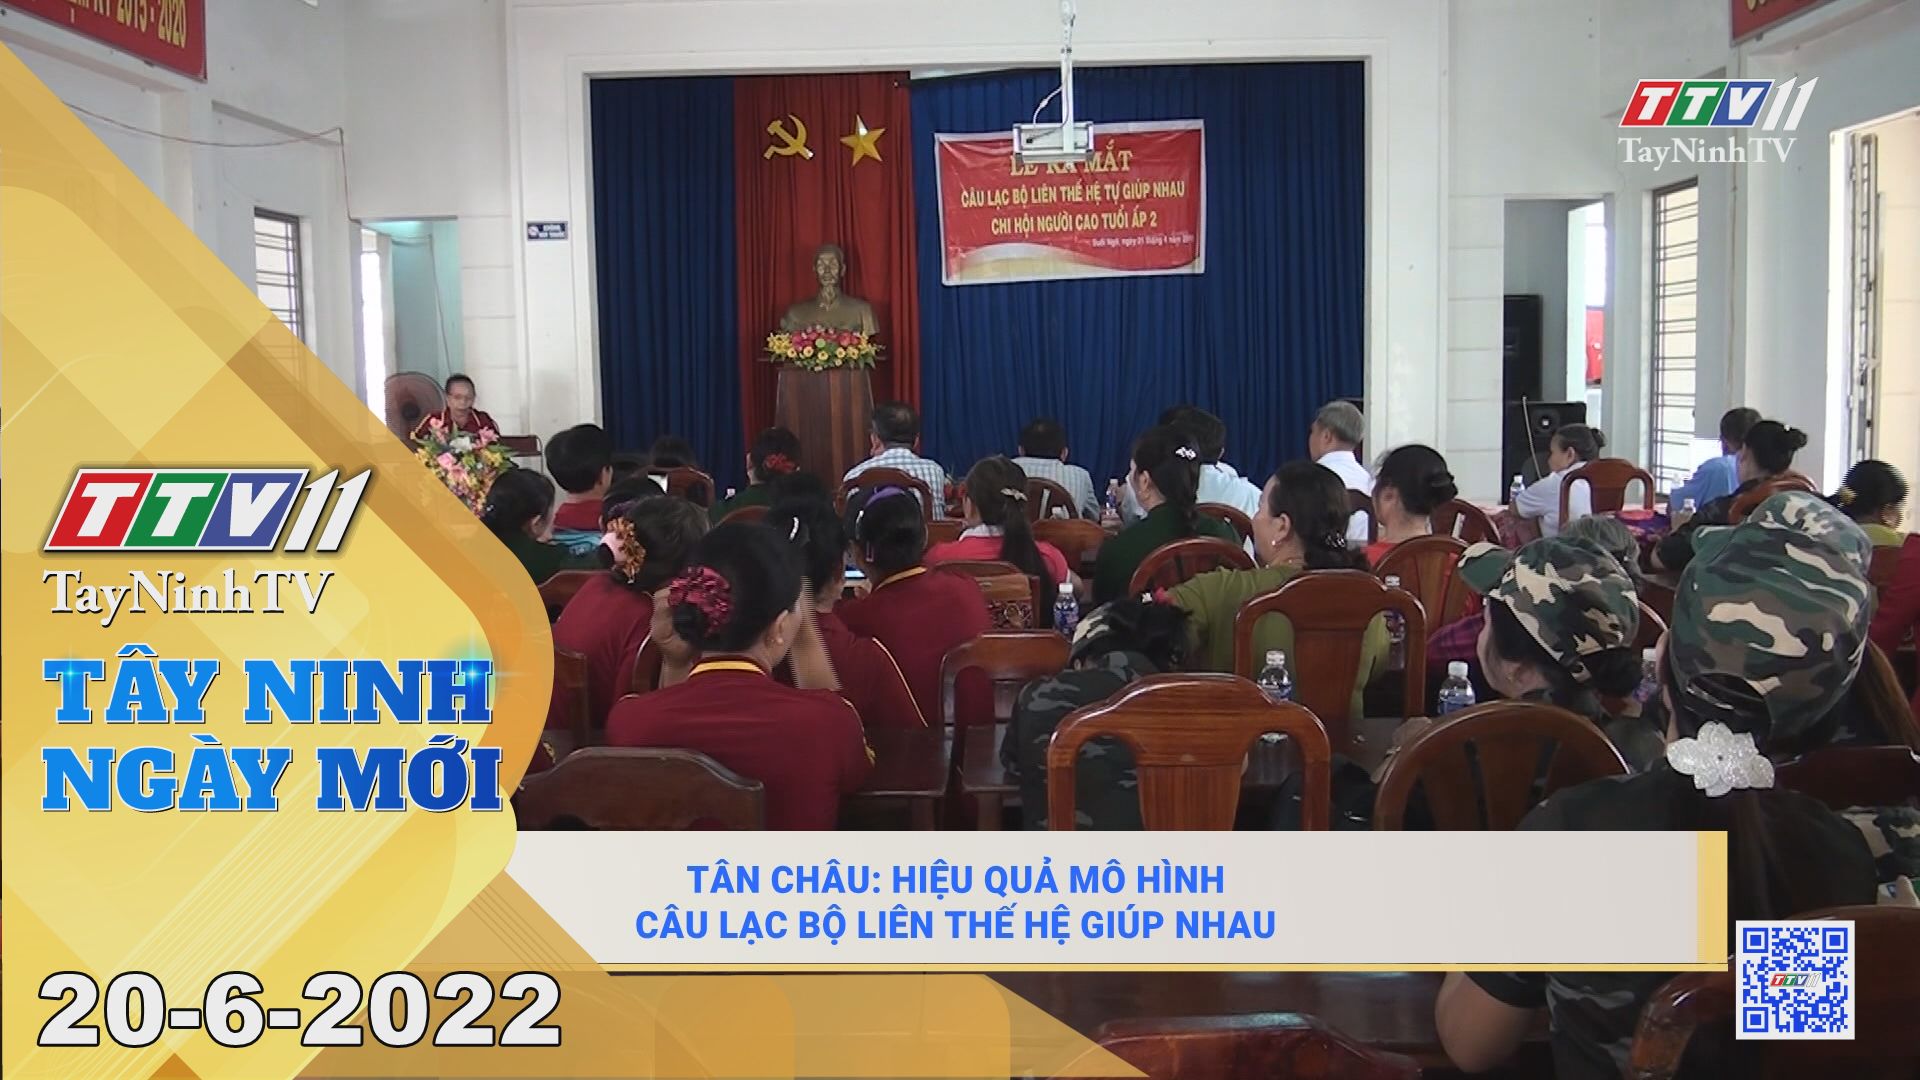 Tây Ninh ngày mới 20-6-2022 | Tin tức hôm nay | TayNinhTV